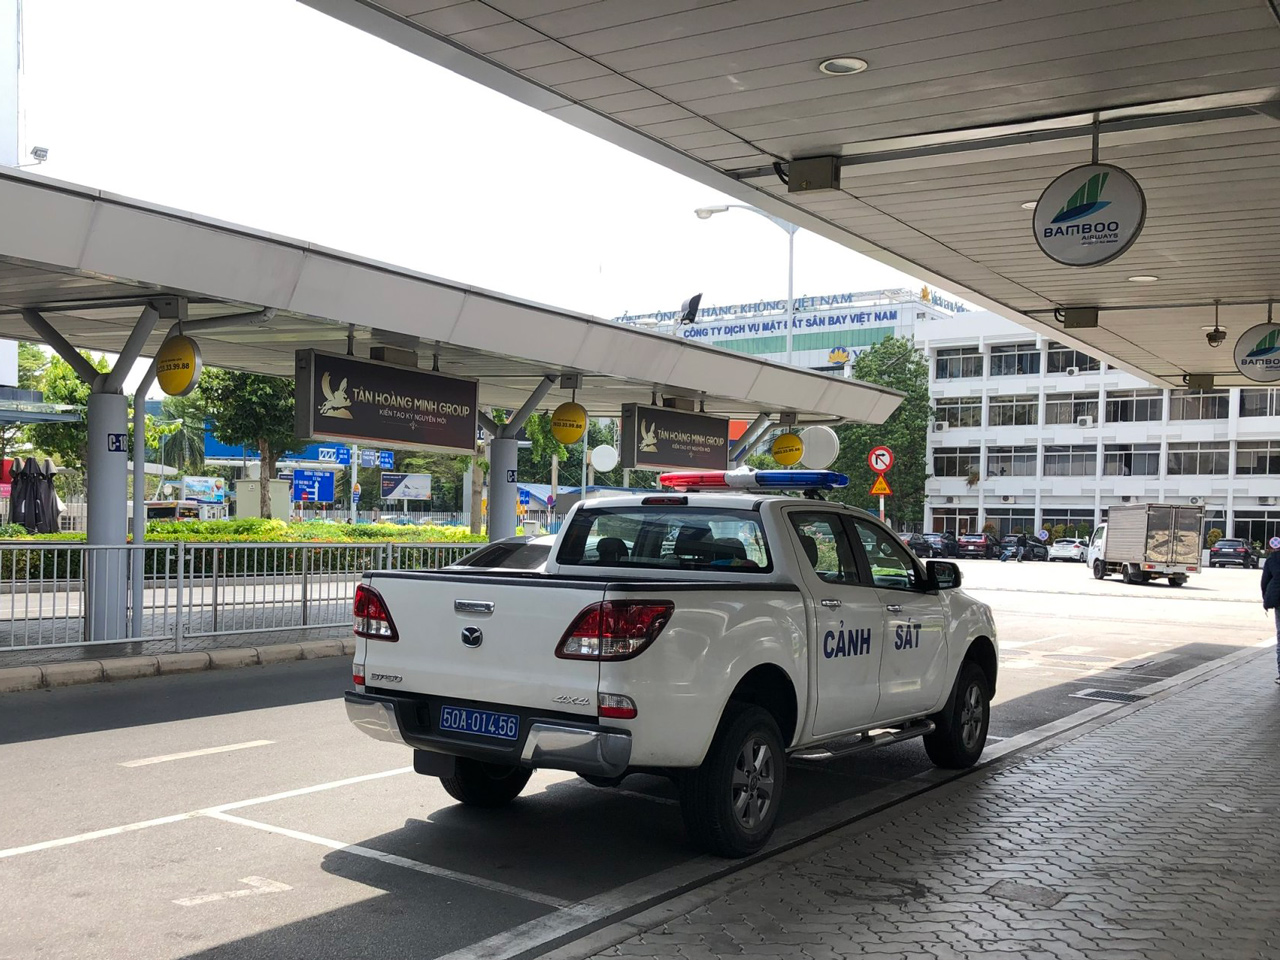 [eMagazine] “Thế giới taxi riêng” ở sân bay Tân Sơn Nhất: Không dễ vào tòa nhà TCP! - Ảnh 8.